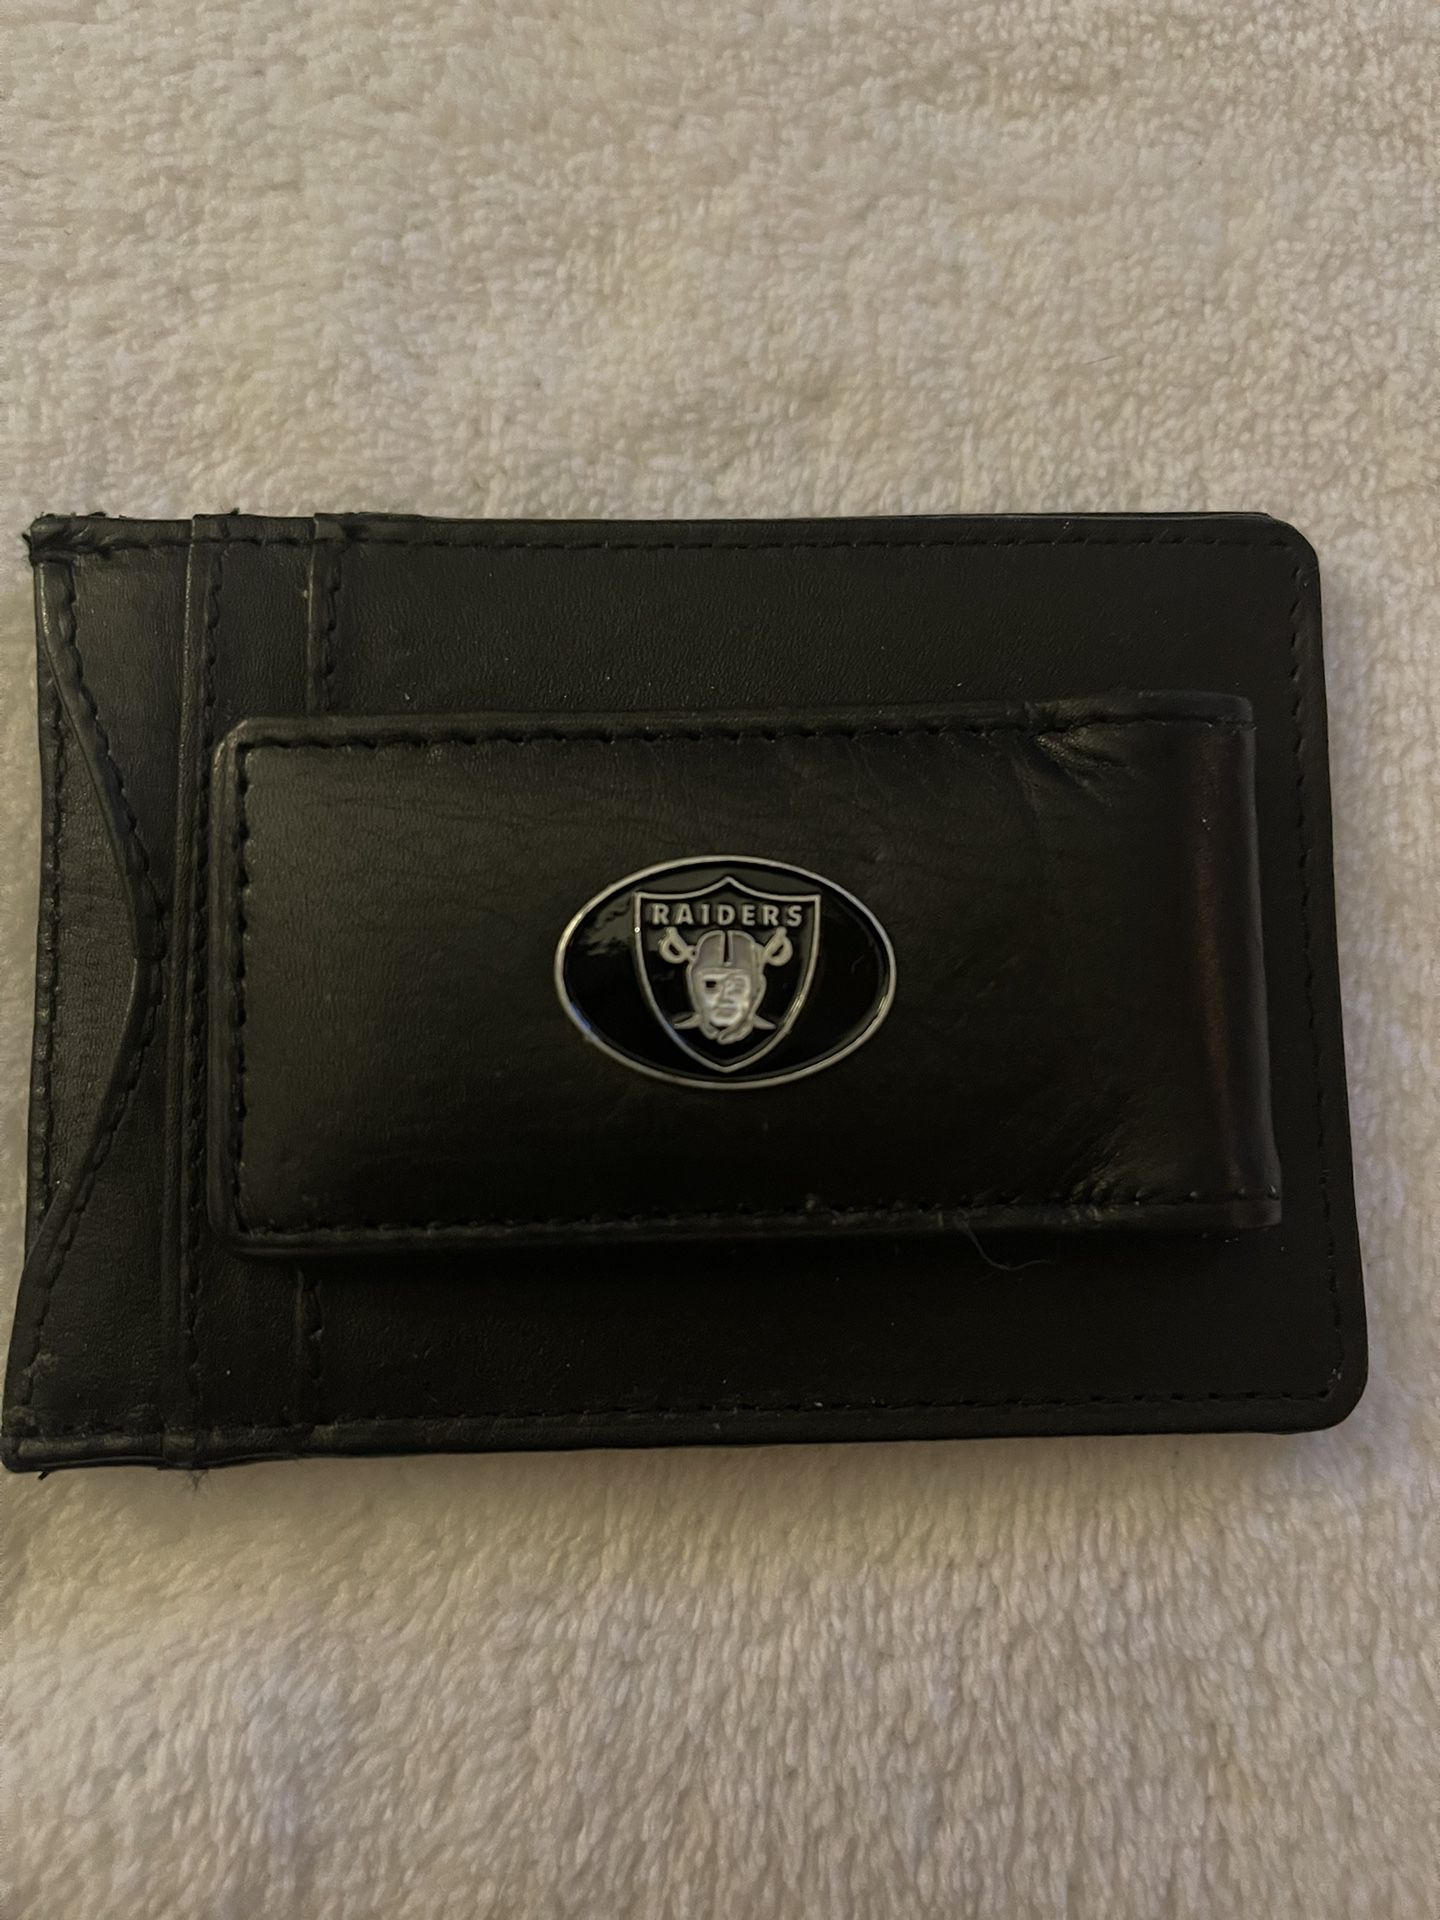 Raiders Wallet